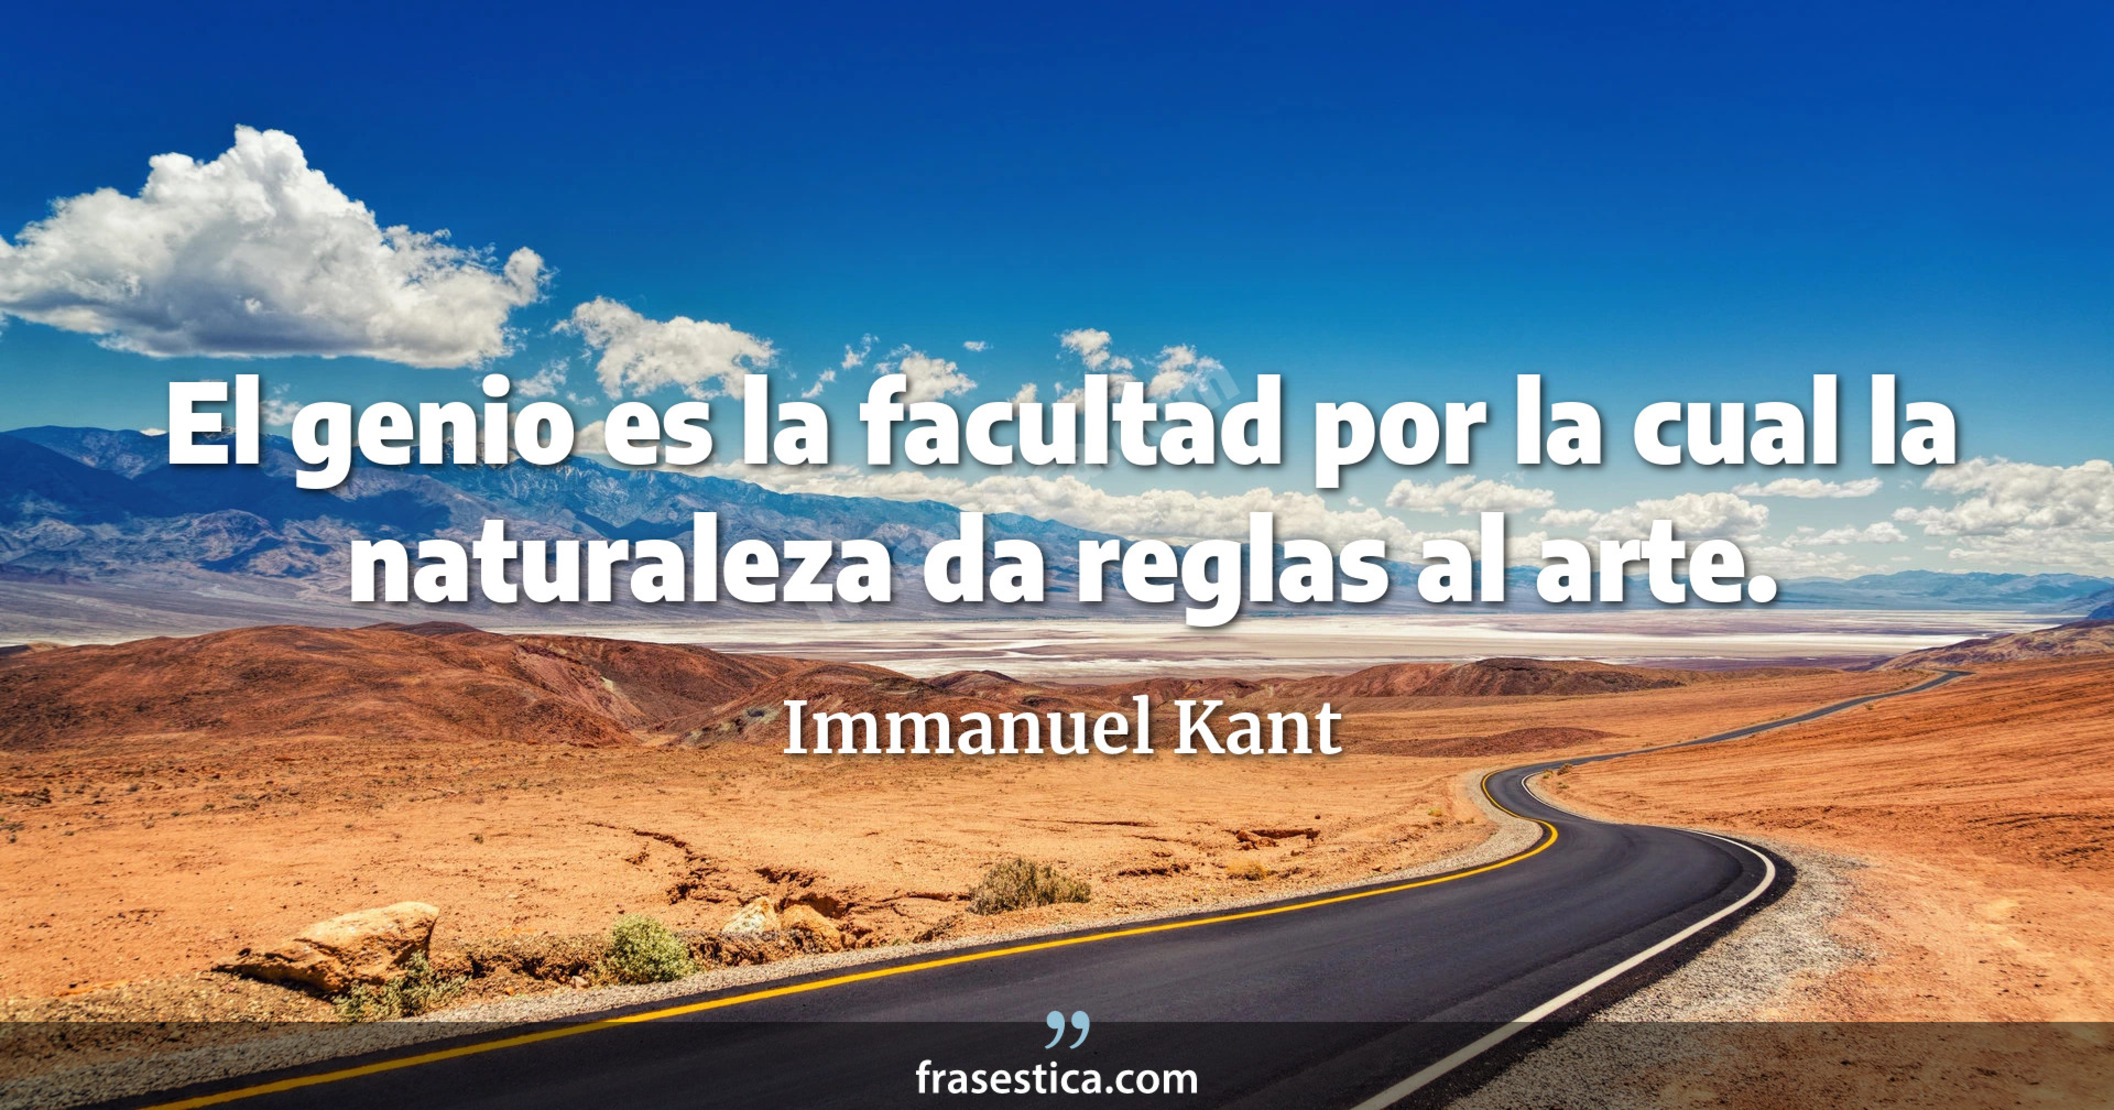 El genio es la facultad por la cual la naturaleza da reglas al arte. - Immanuel Kant